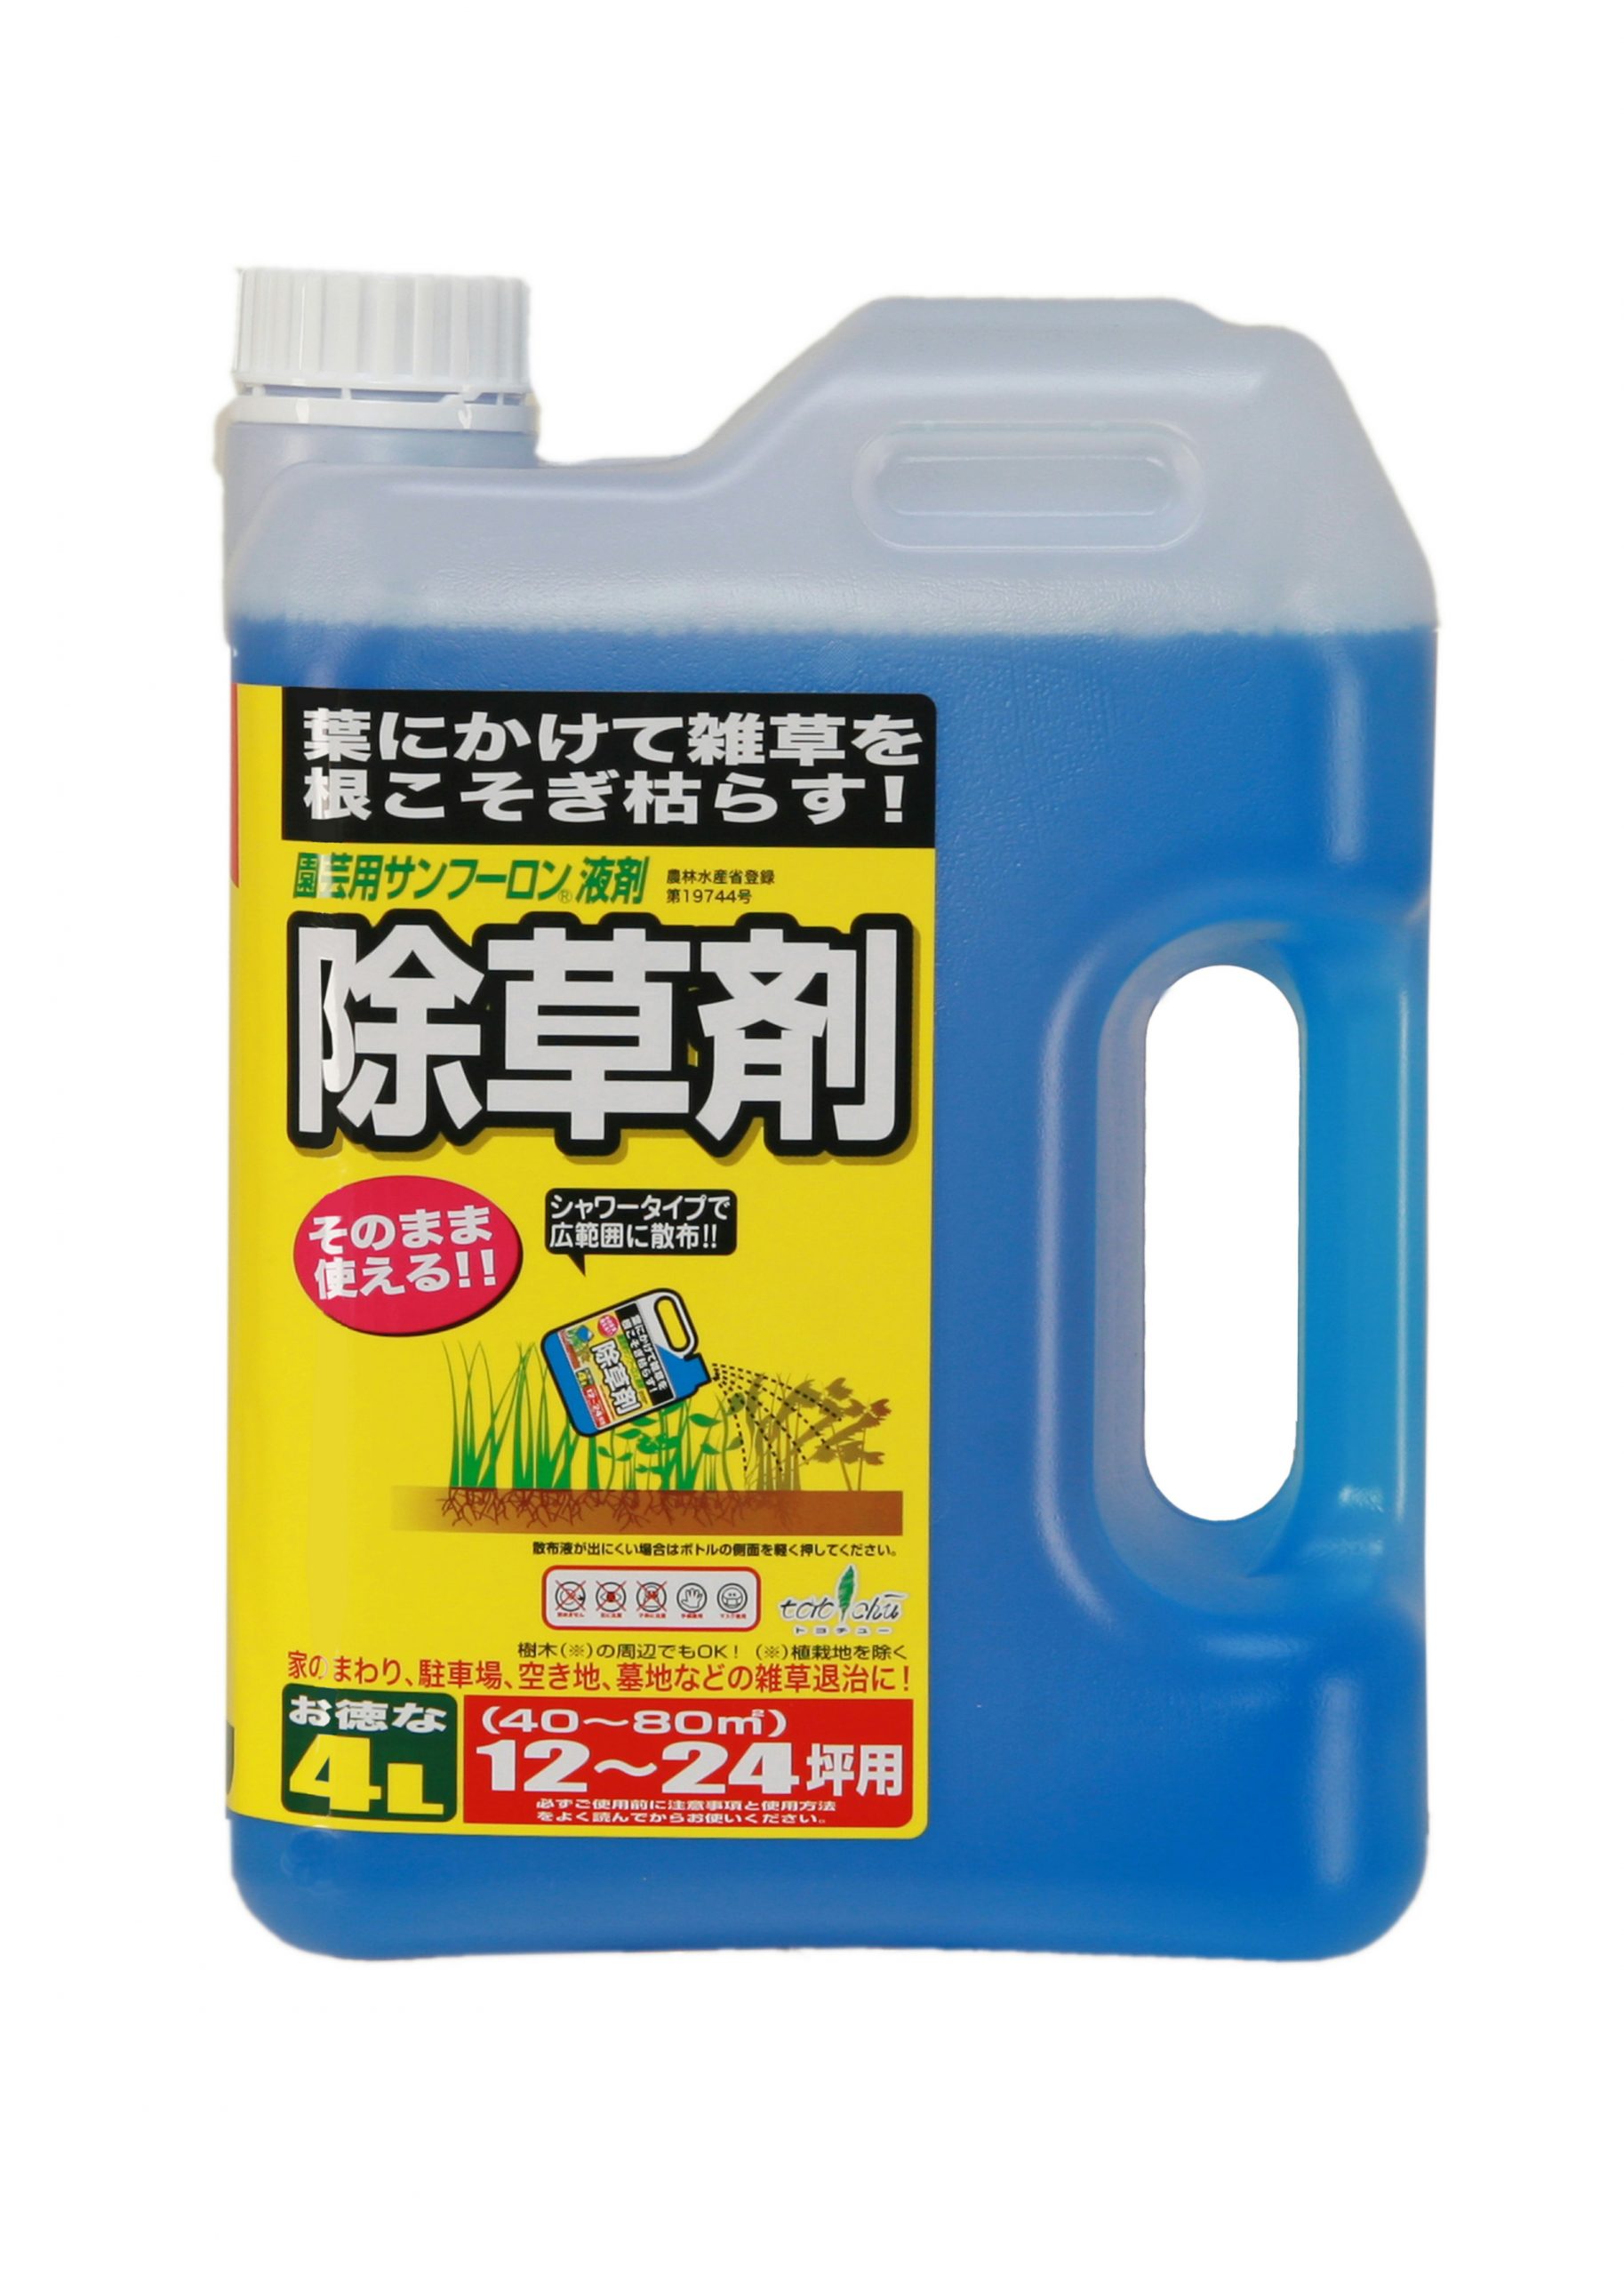 園芸用サンフーロン液剤 4L | トヨチューオンラインショップ